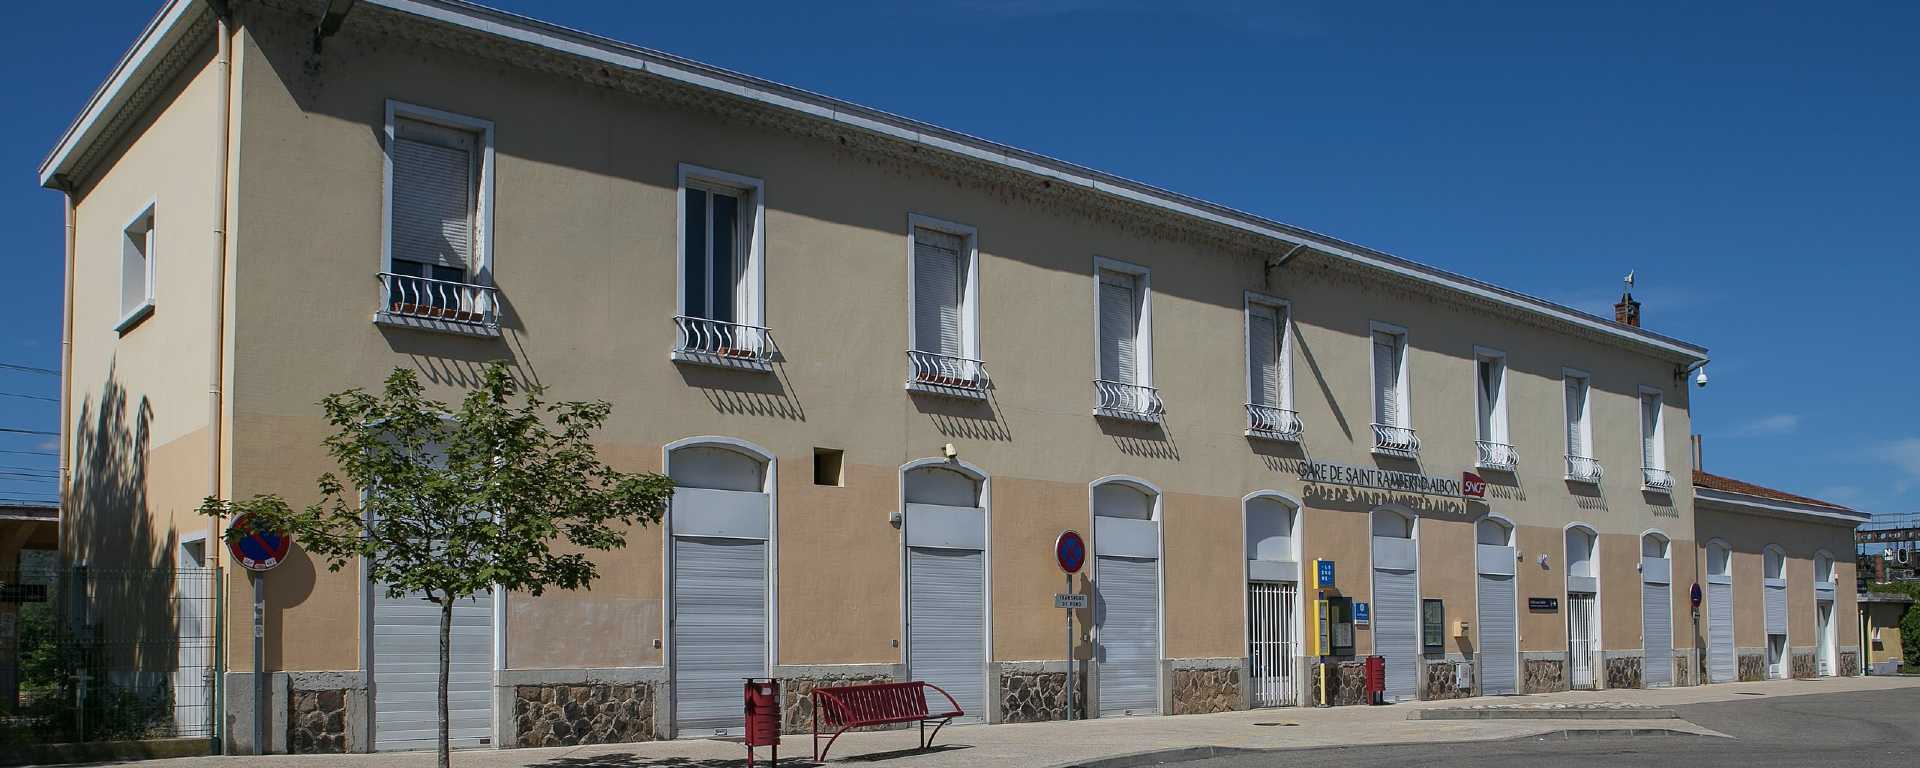 Gare de Saint-Rambert-d'Albon , Drôme